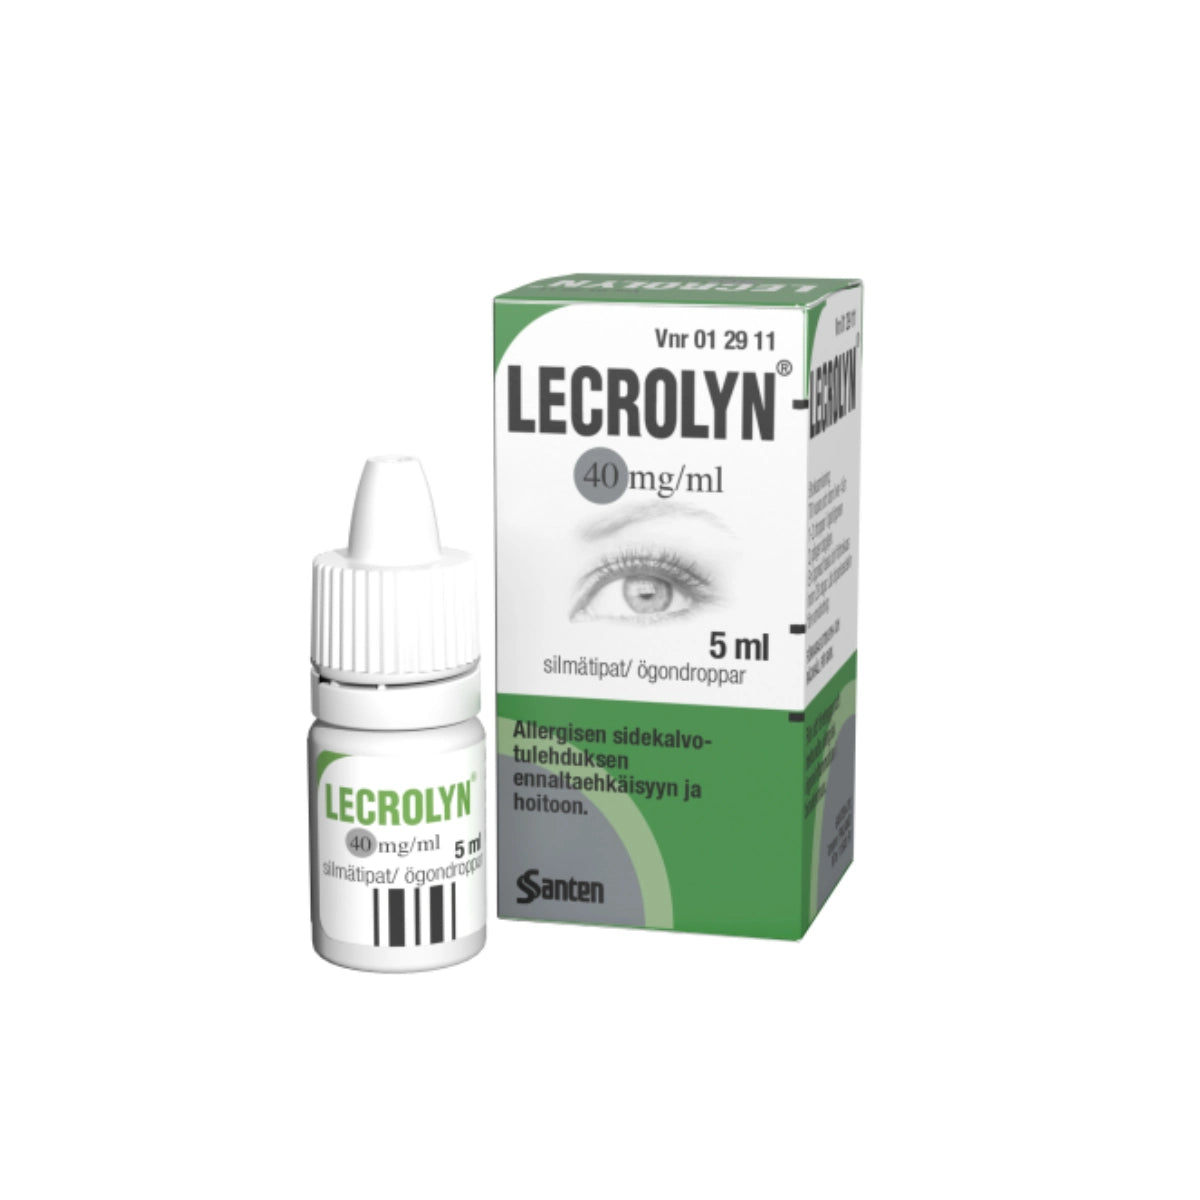 LECROLYN 40 mg/ml silmätipat, liuos 5 ml allergisen sidekalvotulehduksen hoitoon